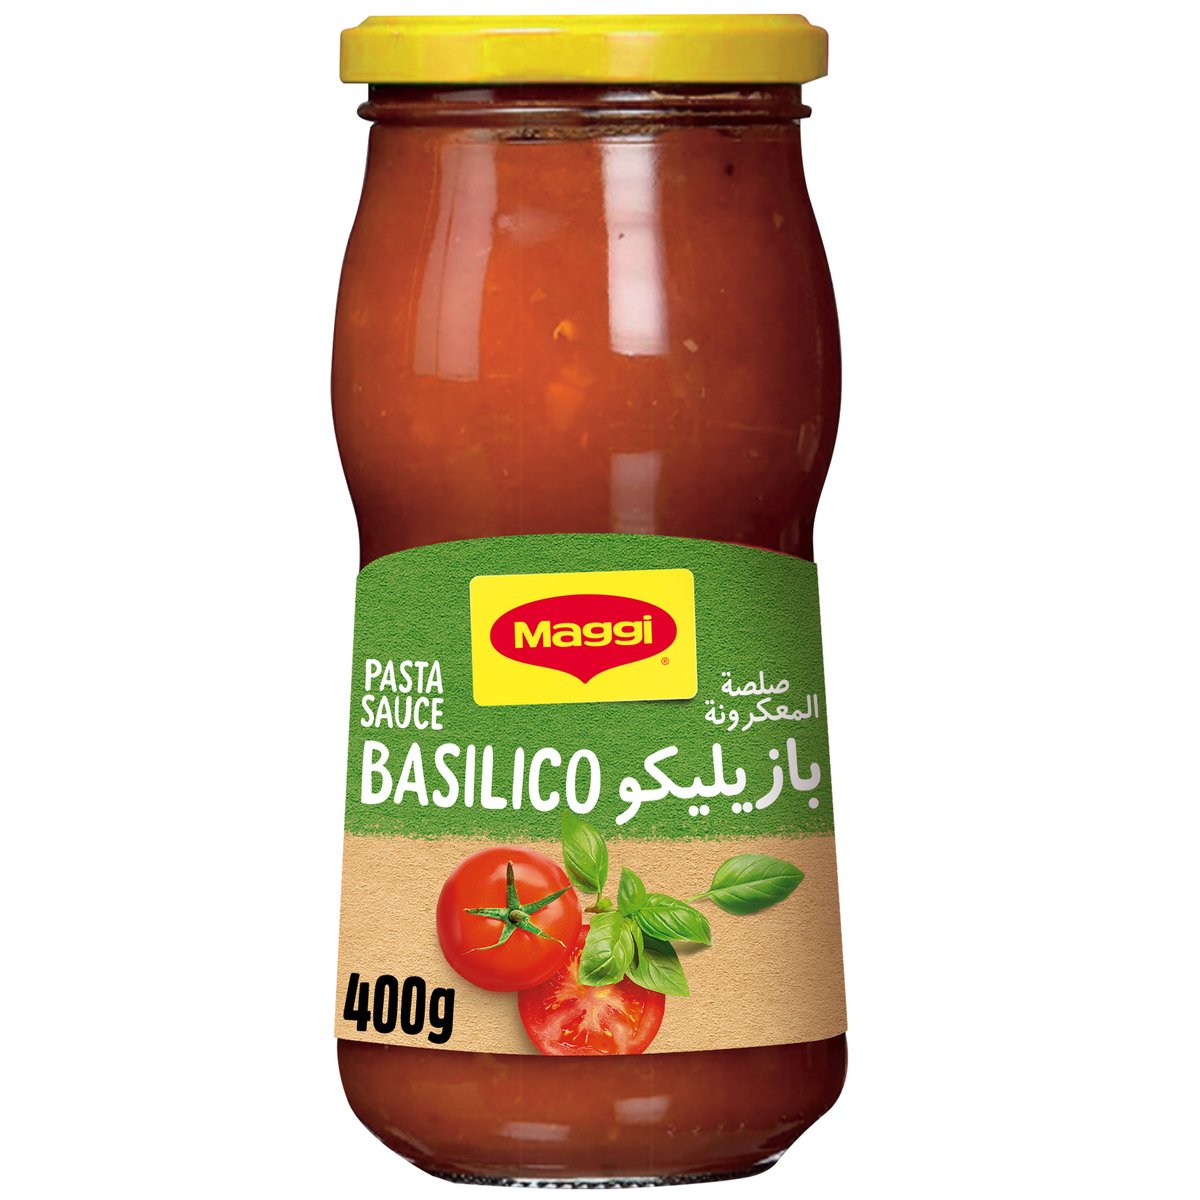 اشتري قم بشراء ماجي صلصة المعكرونة بازيليكو 400 جم Online at Best Price من الموقع - من لولو هايبر ماركت Cooking Sauce في السعودية